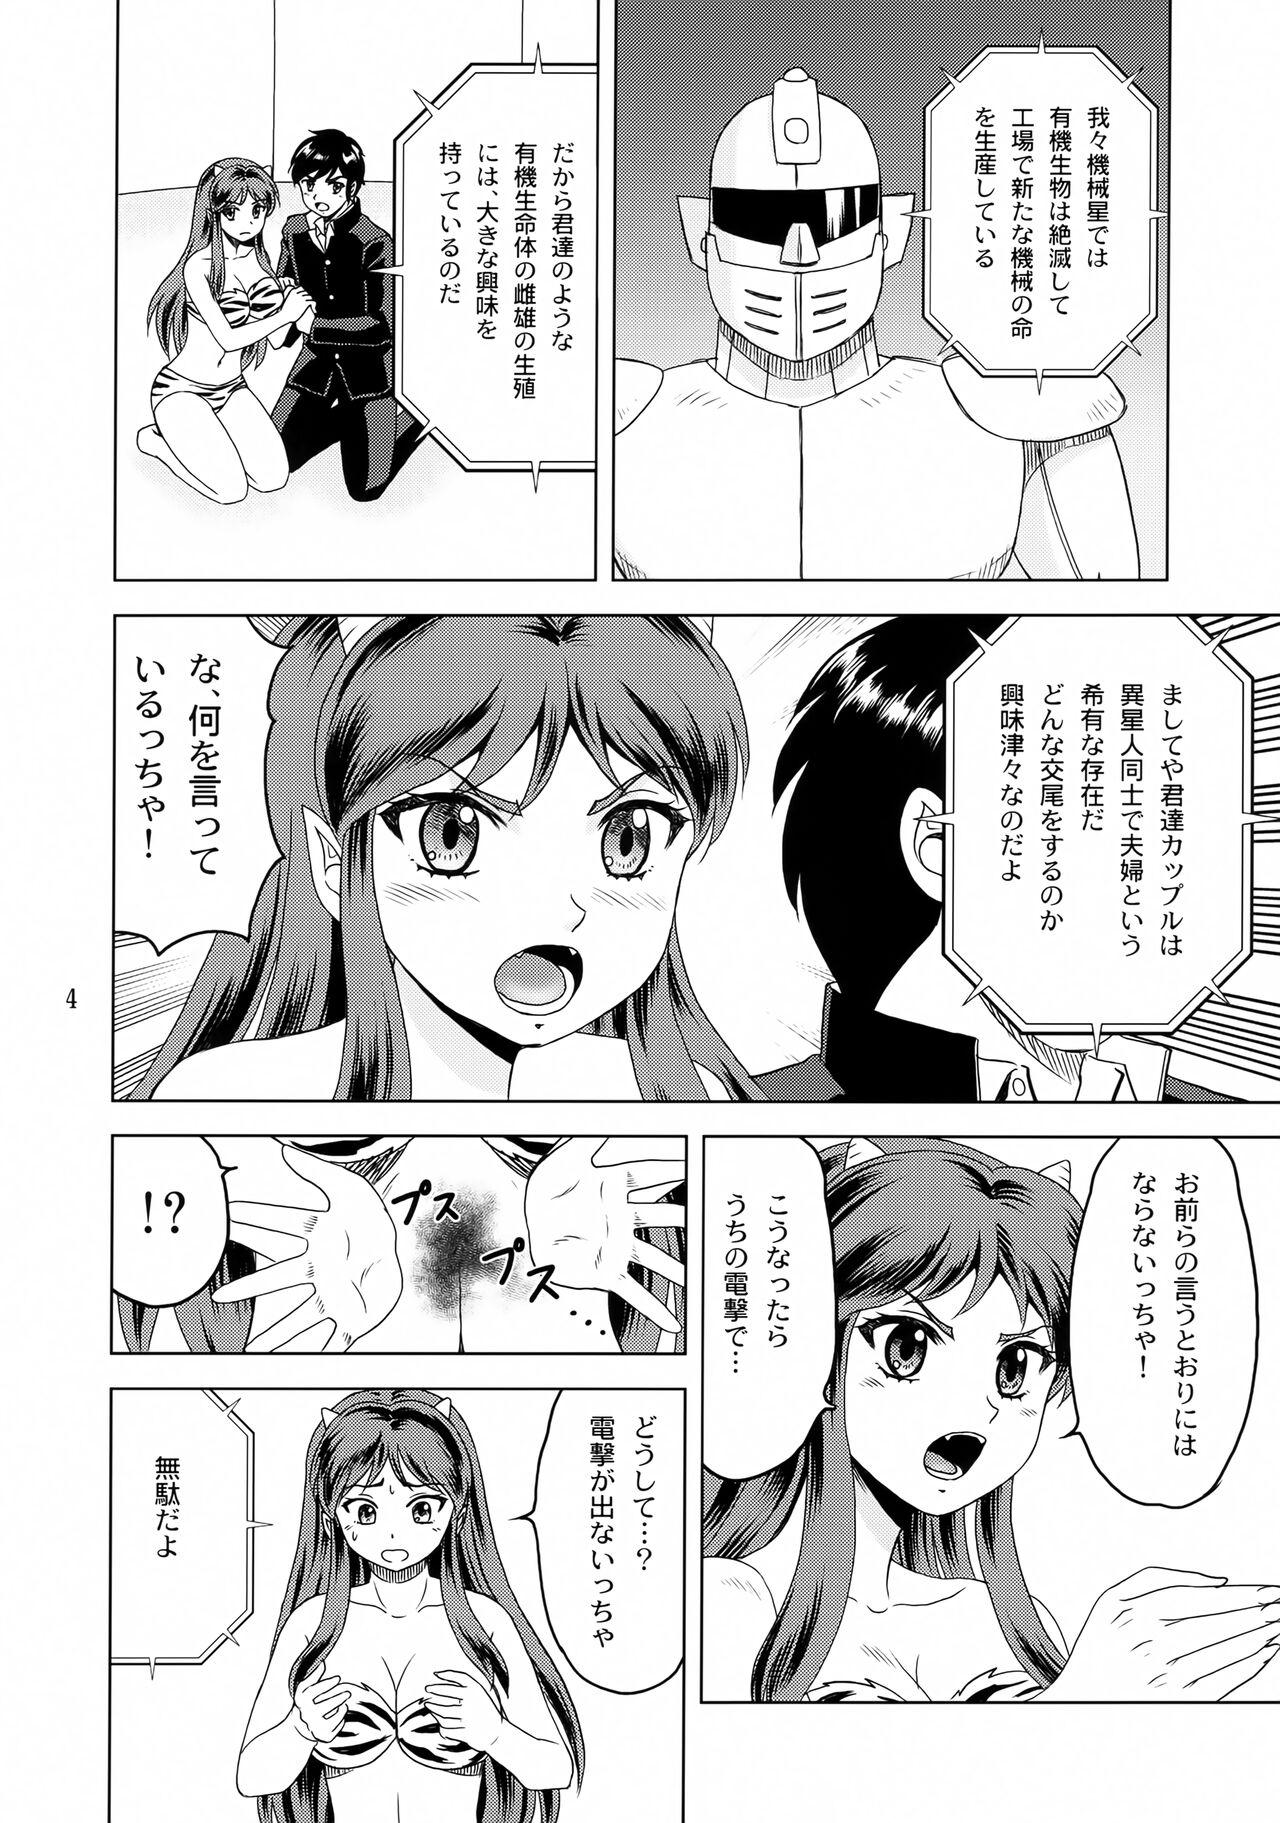 Tongue Mirarete Suru no wa Iyadaccha! - Urusei yatsura Youth Porn - Page 3